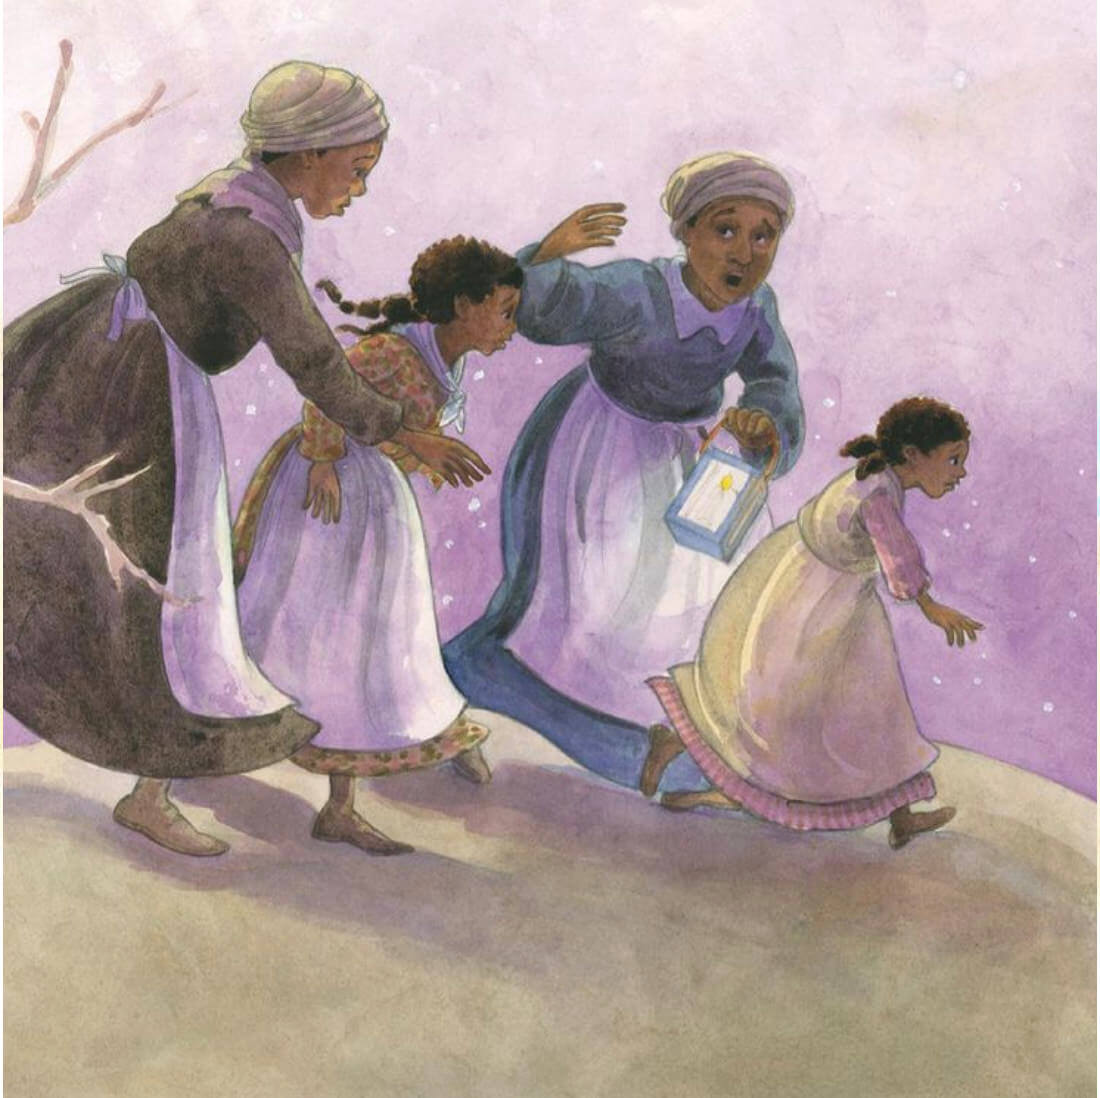 Two black women and girls running